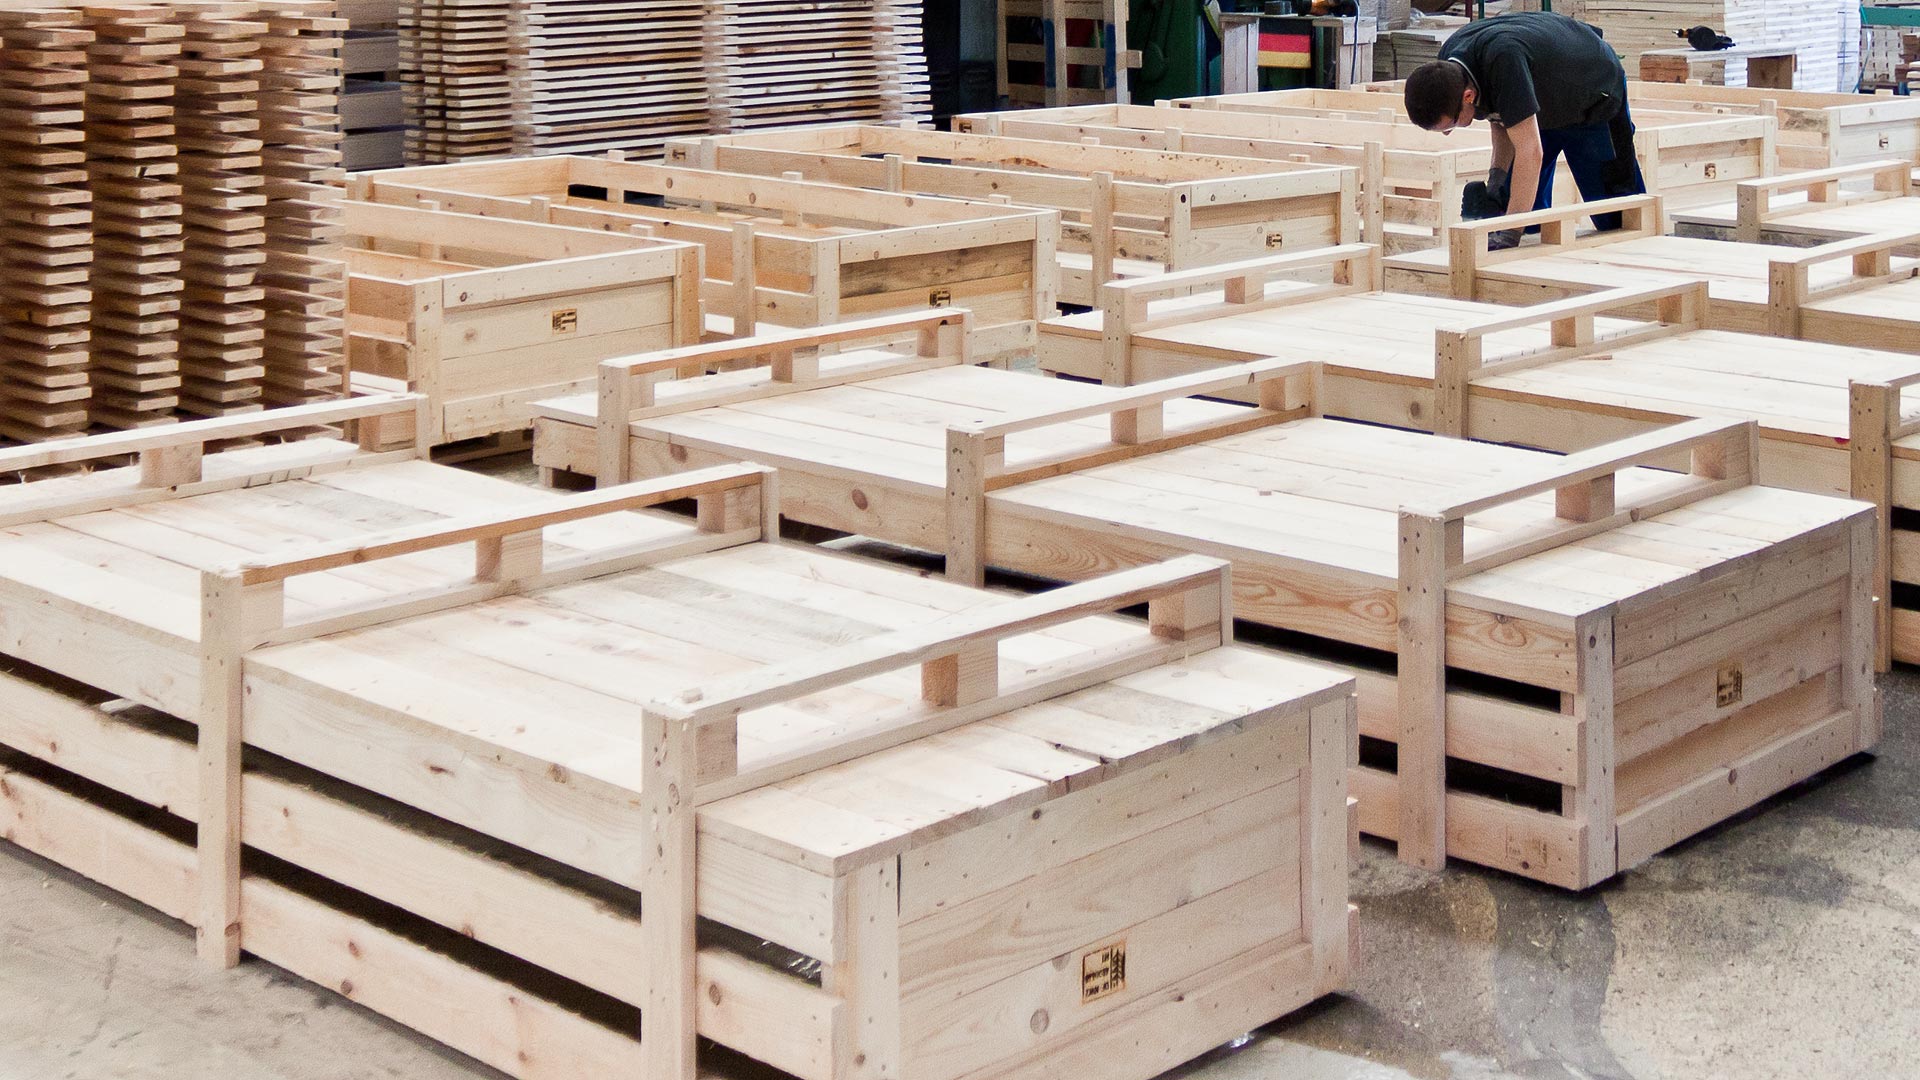 Produktion von Holzkisten für Transport und Export